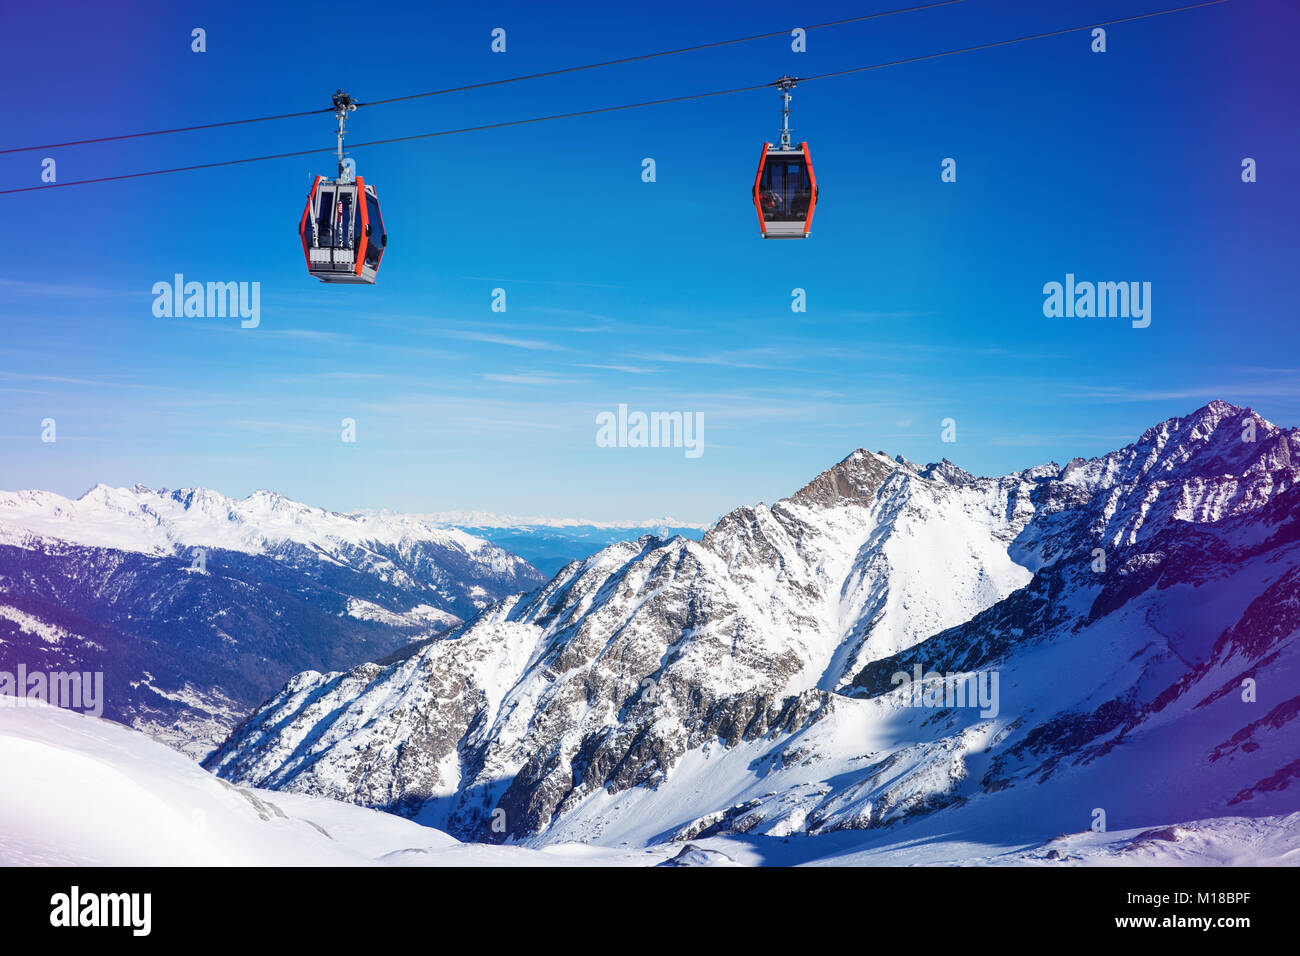 Skigebiet Seilbahnen auf die schöne Berglandschaft in Italien Alpen Stockfoto